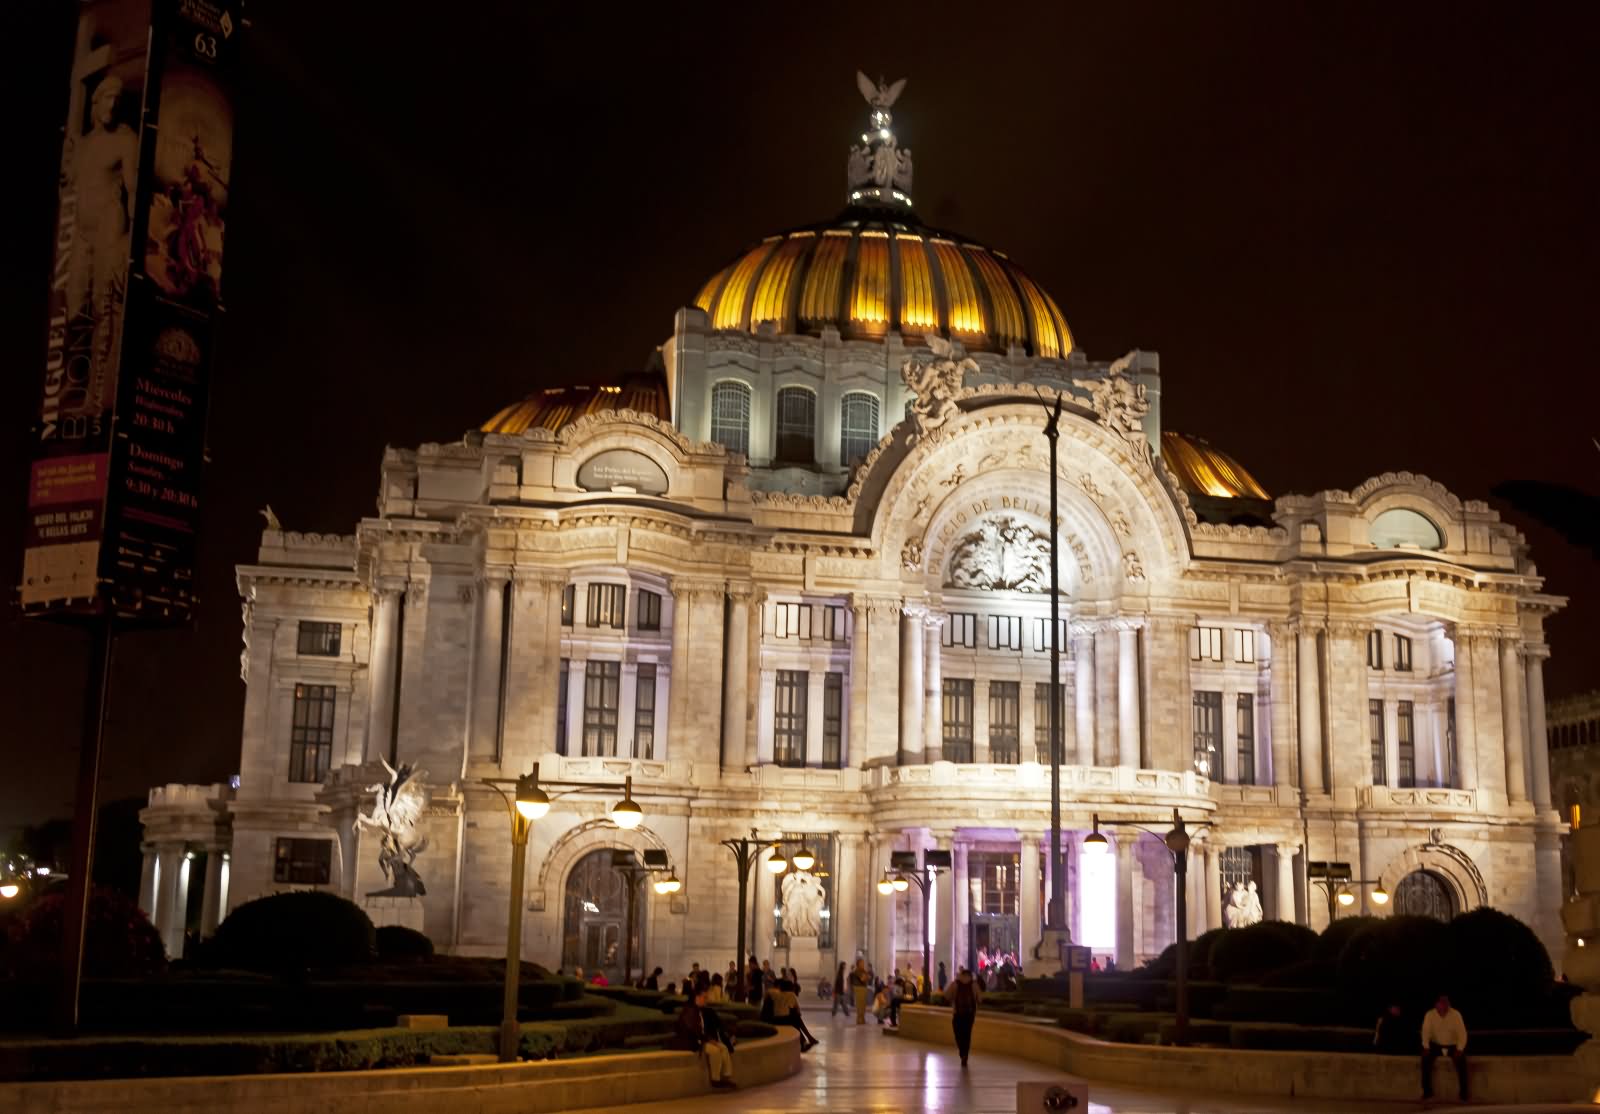 Front View Of The Palacio de Bellas Artes At Night